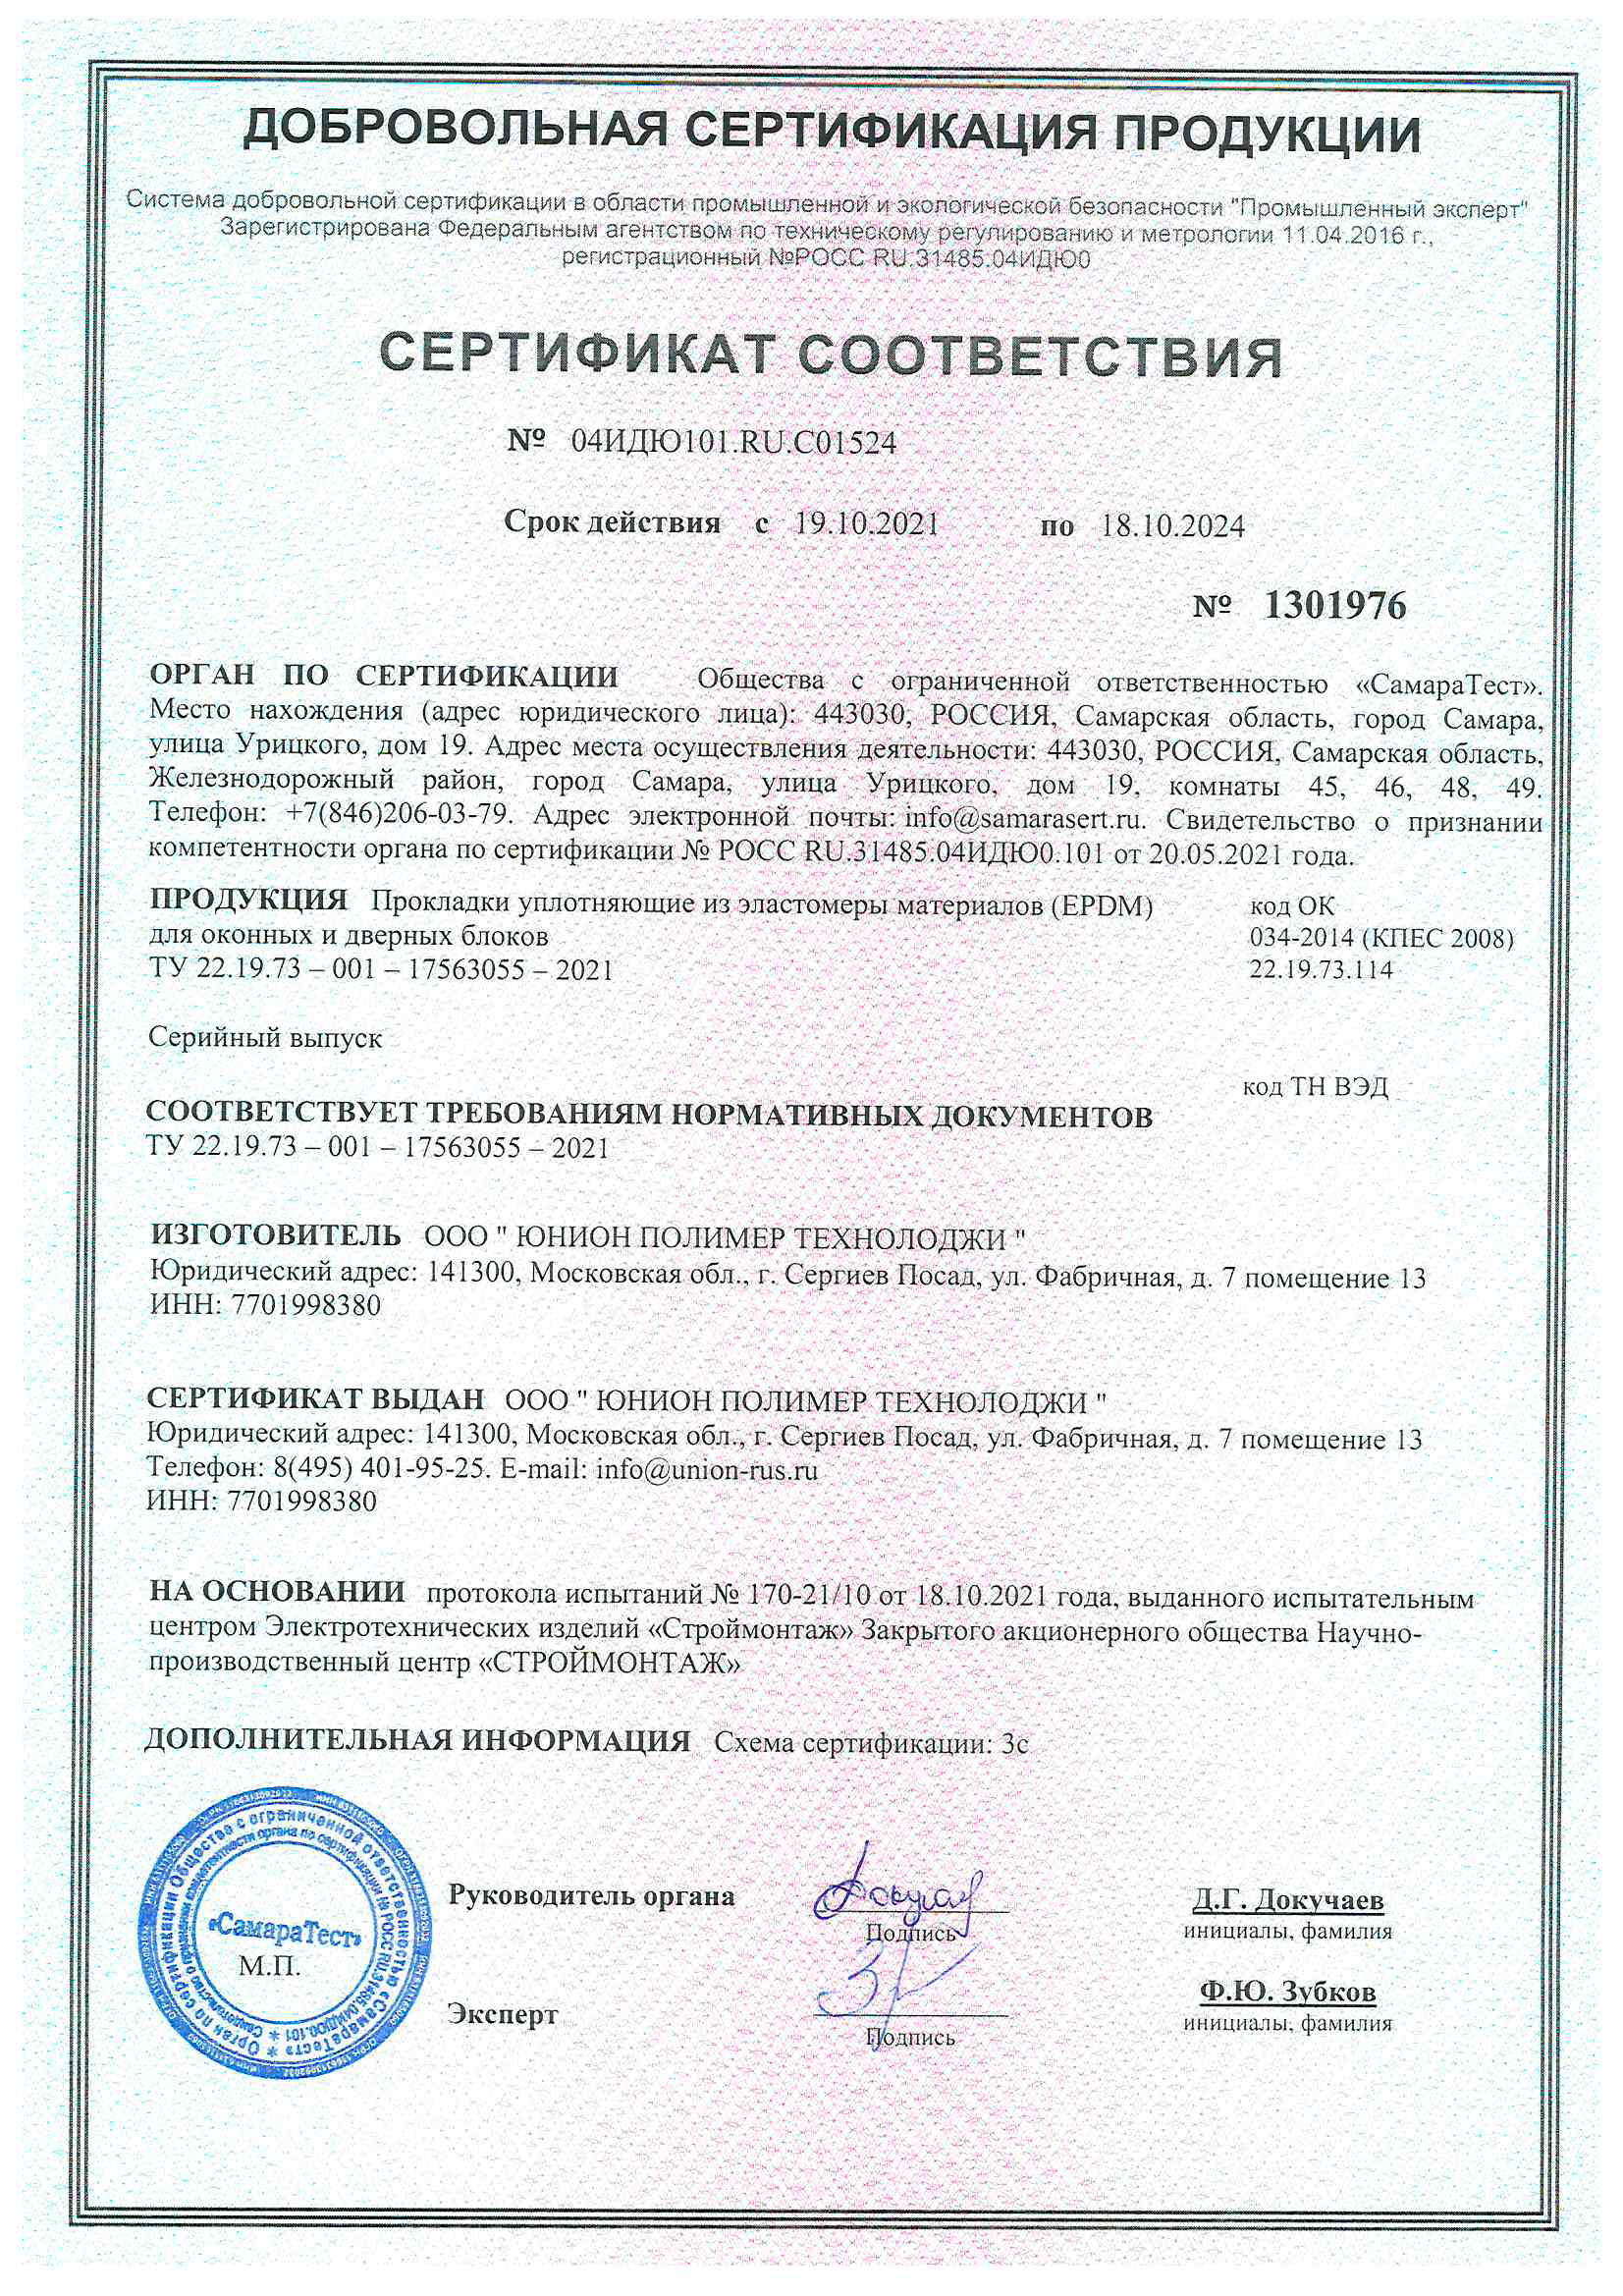 Сертификат прокладки уплотняющей для оконных и дверных блоков, 18.10.2024